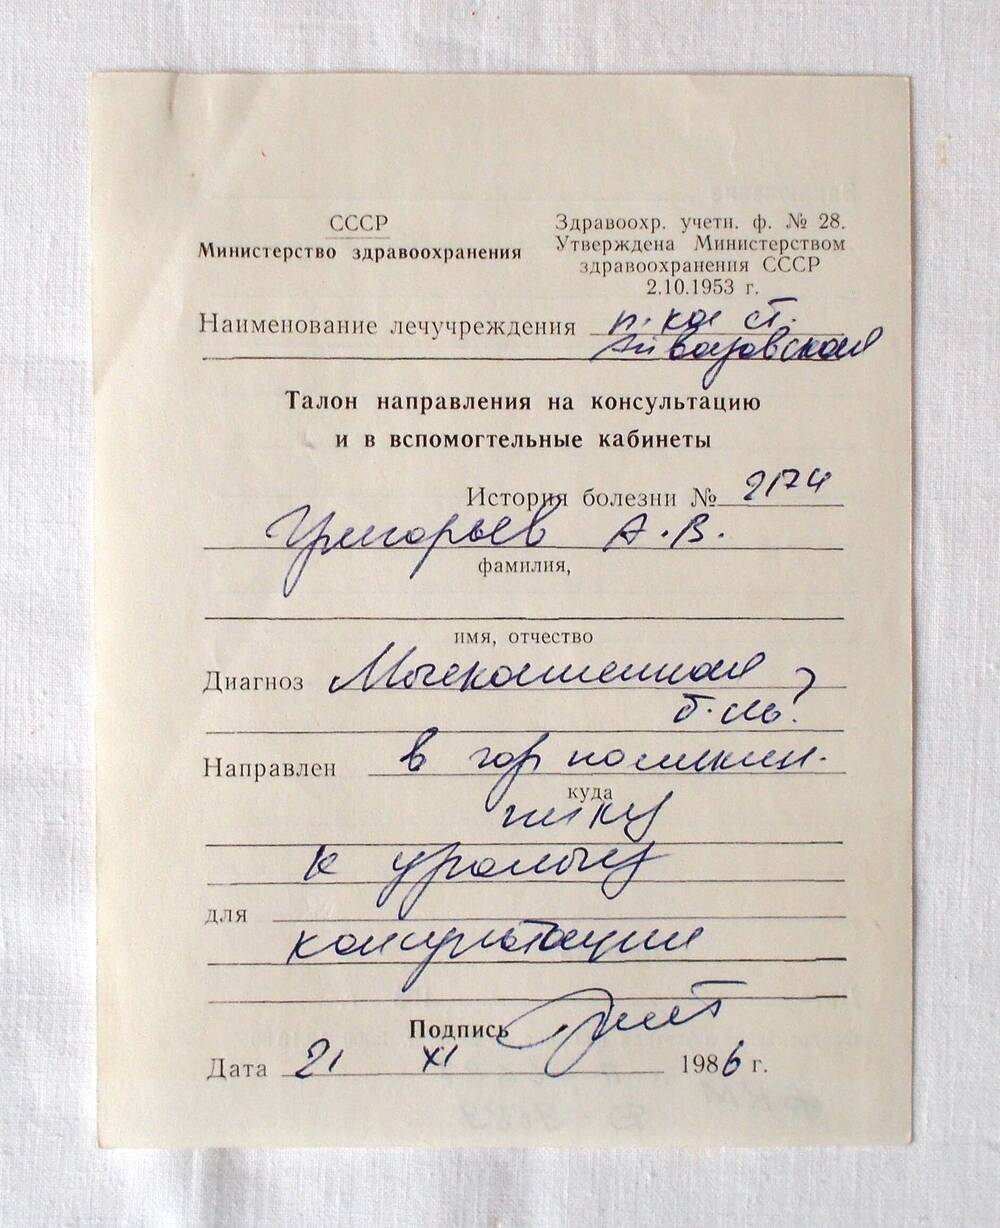 Талон направления на консультацию и во вспомогательные кабинеты Григорьева А.В. 1986 г.